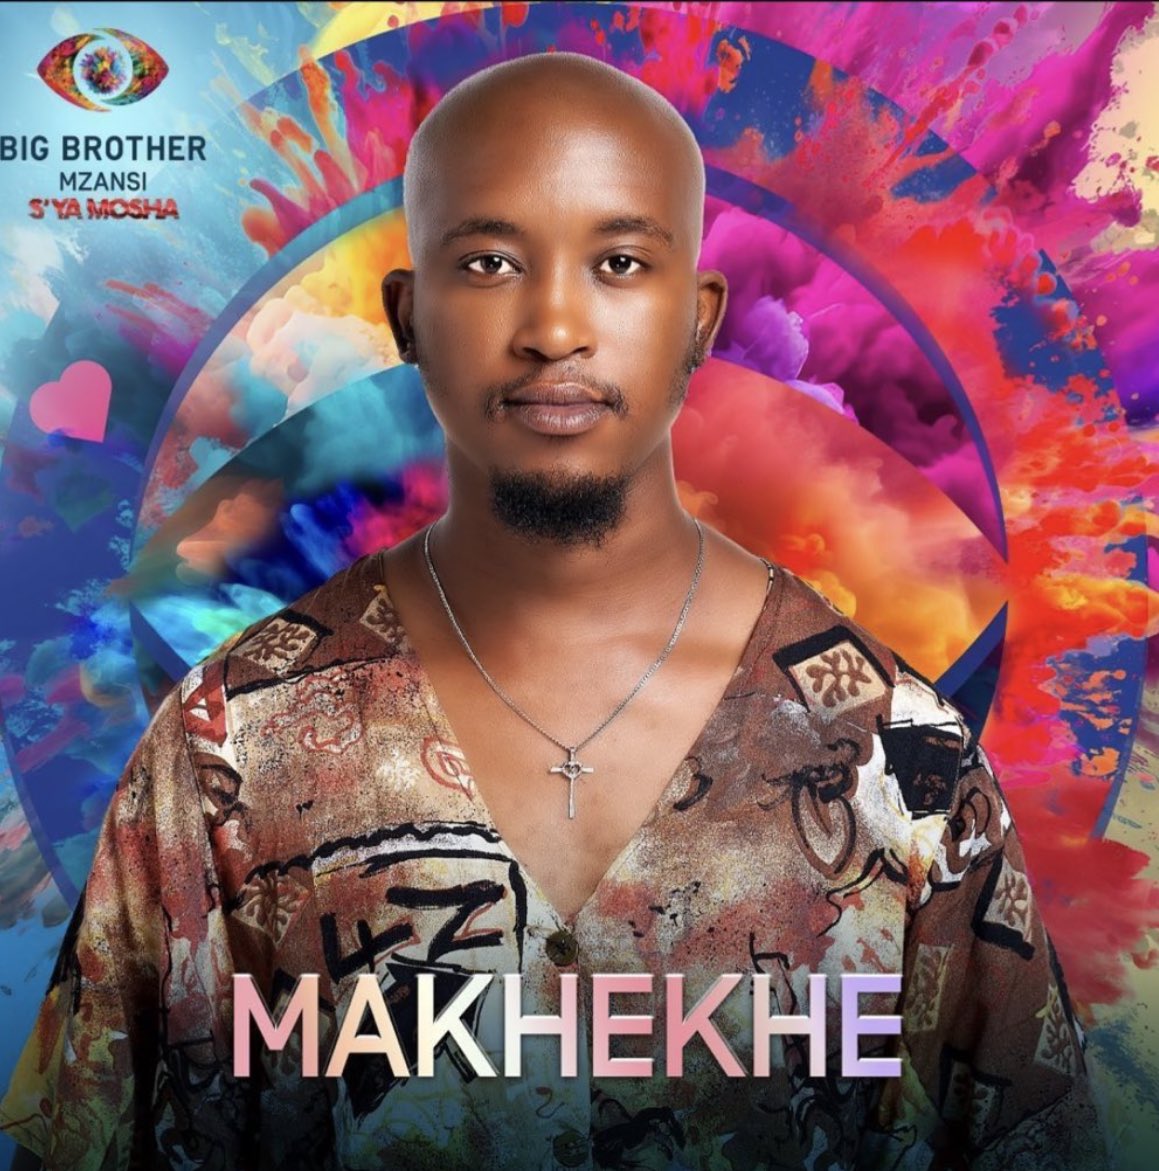 We’re voting for Makhekhe right?? #Makhekhe for the 2mil #bbmzansi    #BBMzanzi